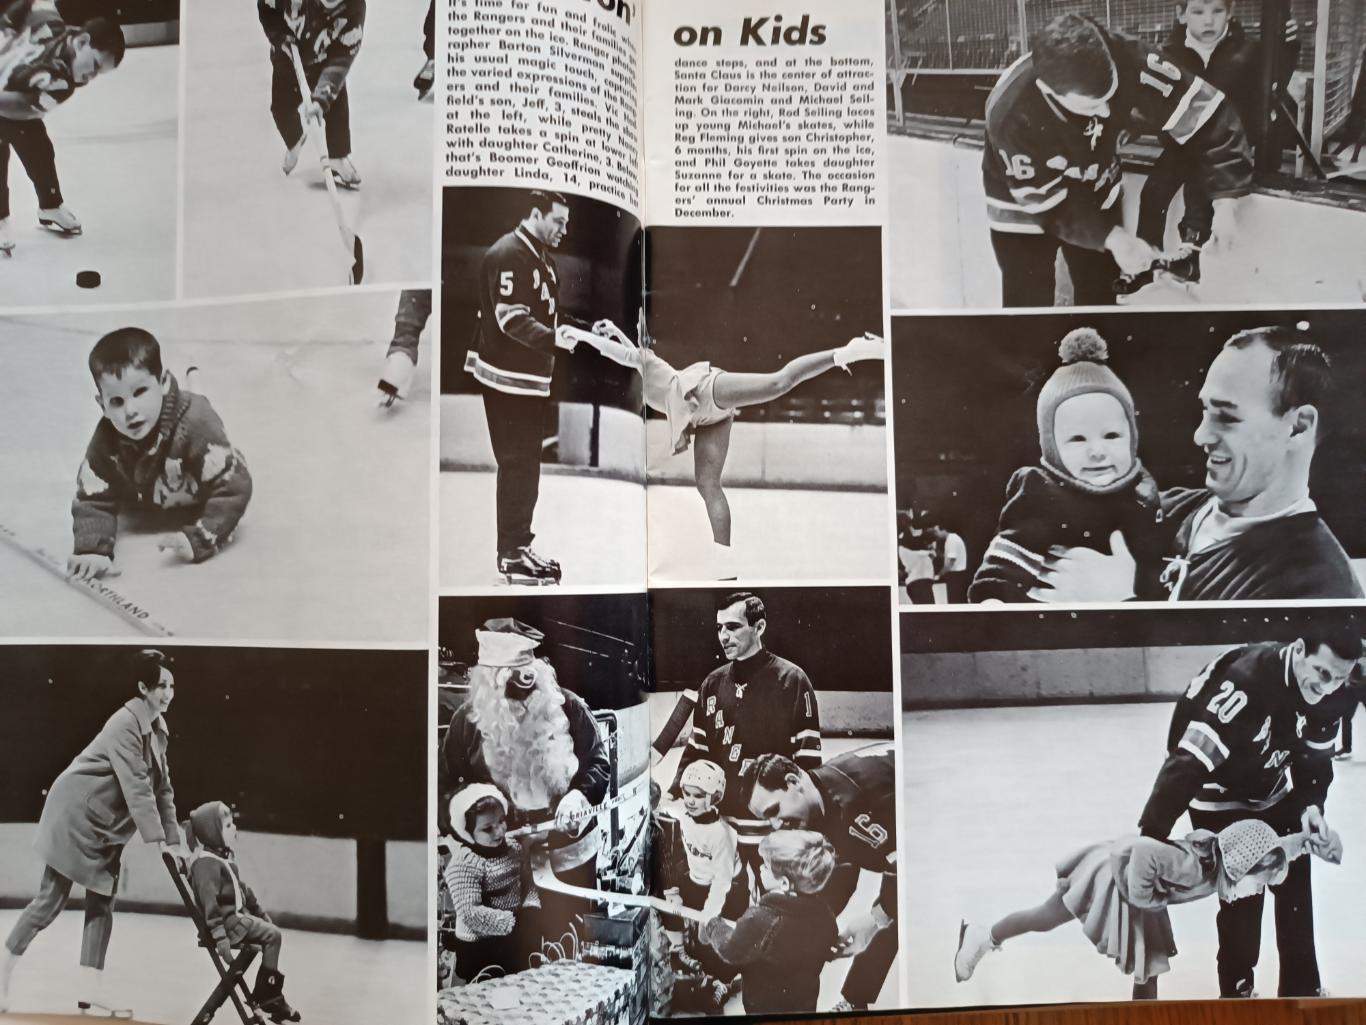 ПРОГРАММА МАТЧА НХЛ РЭЙНДЖЕРС КИНГЗ 1968 MAR.10 RANGERS VS. LA KINGS PROGRAM 2